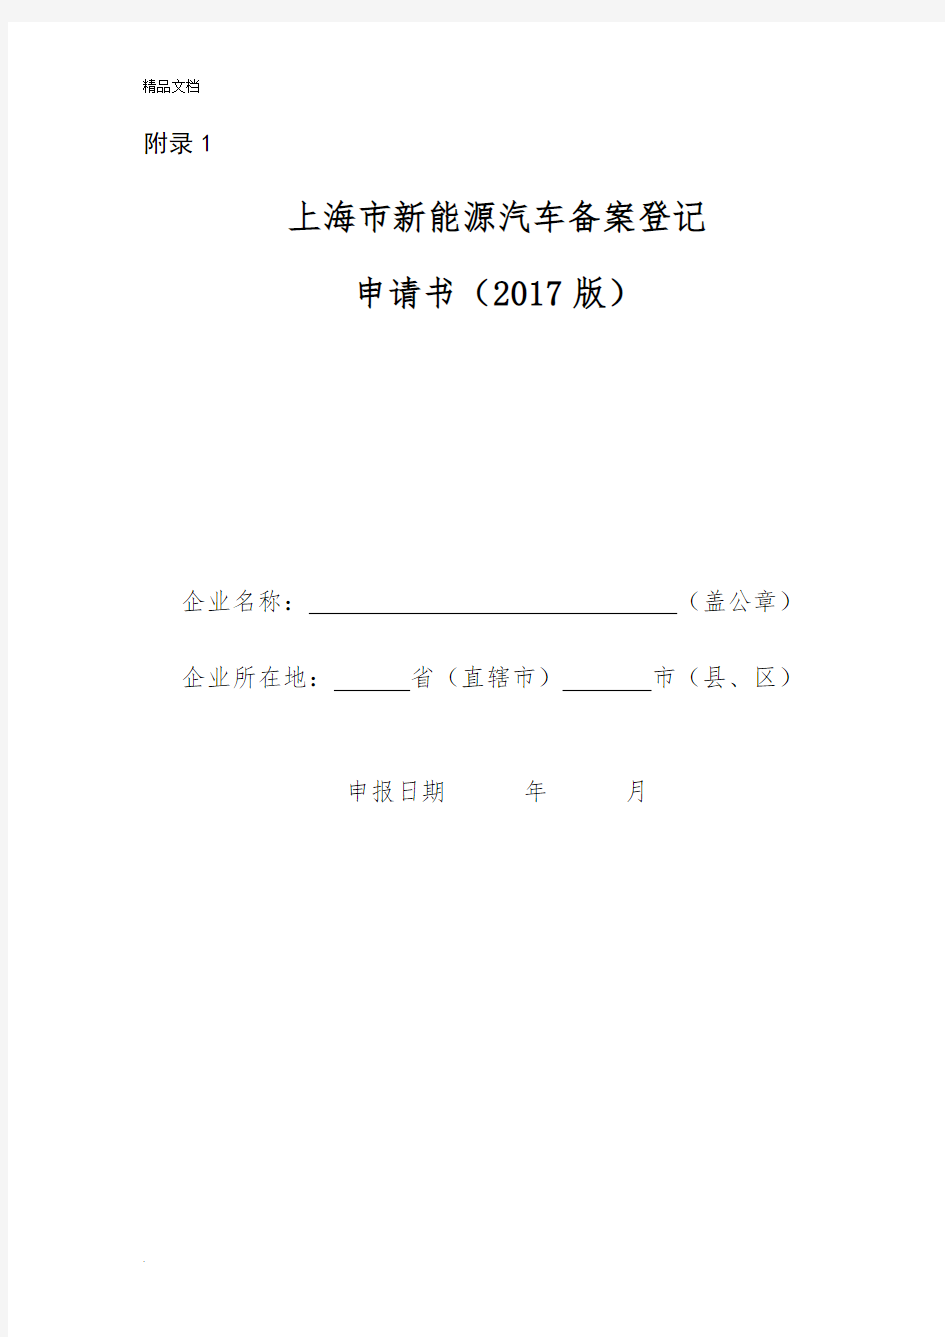 上海市新能源汽车备案登记申请书(2017版)